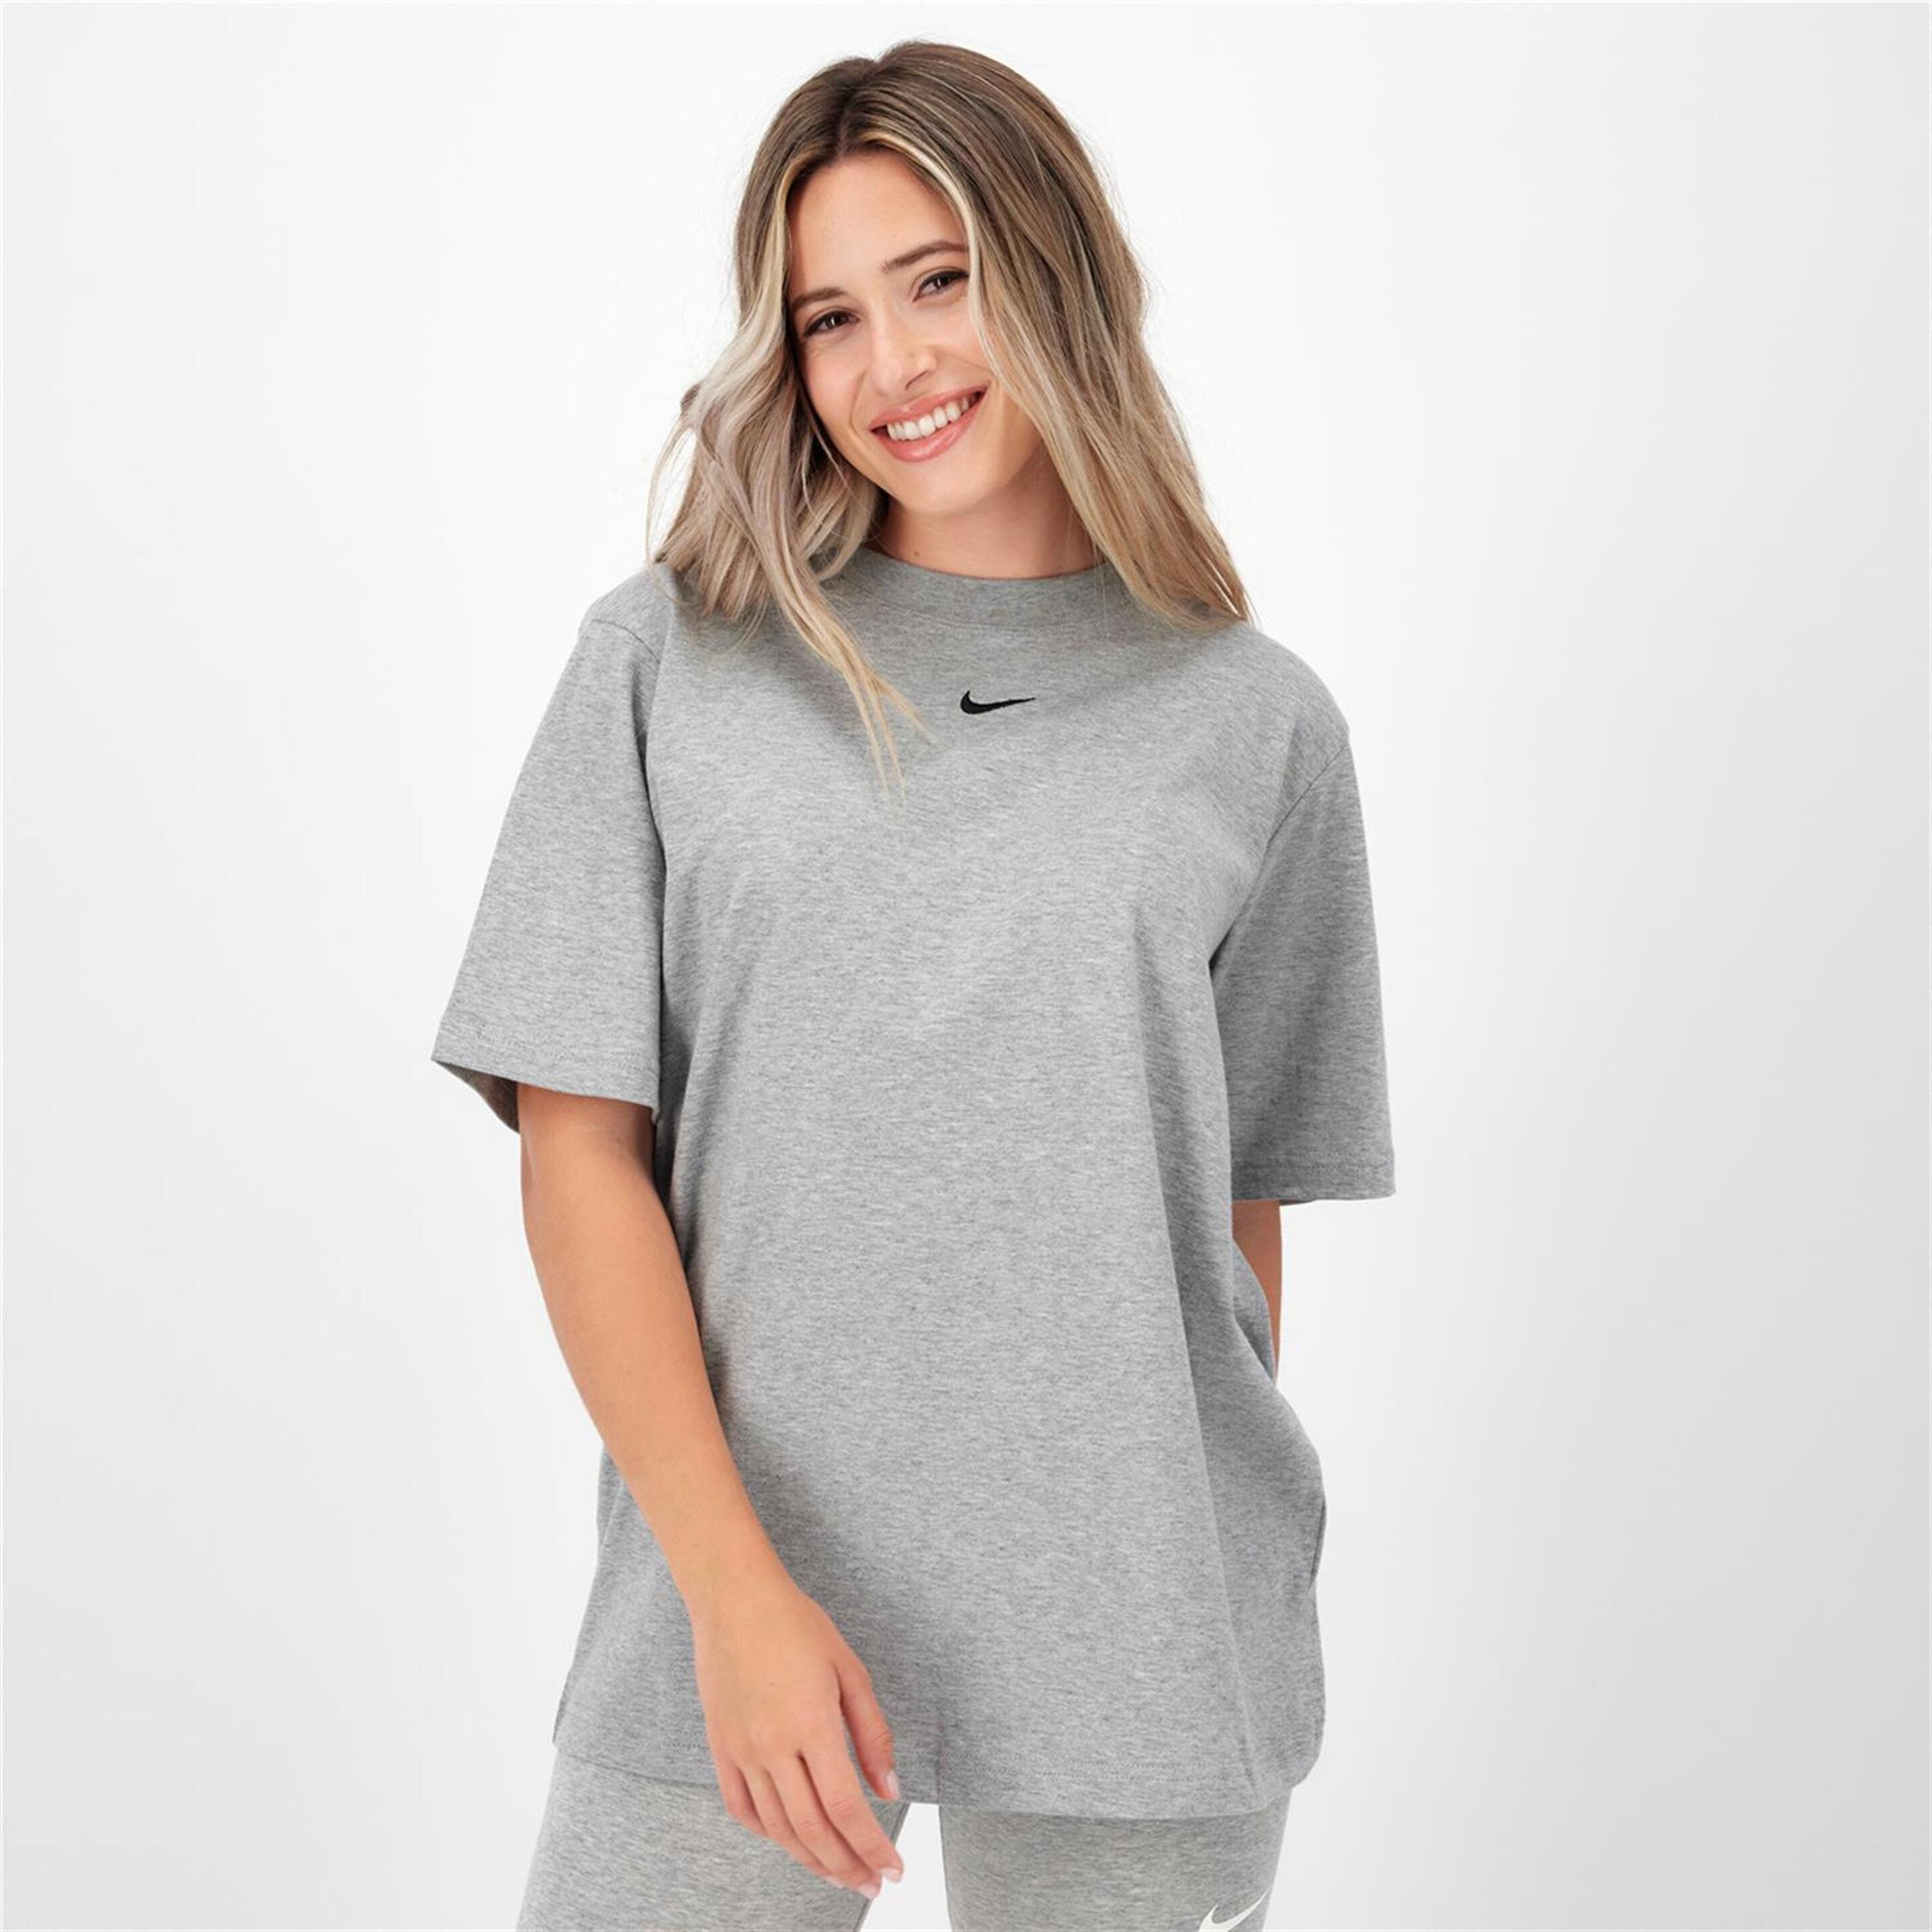 Camiseta Nike - gris - Camiseta Mujer